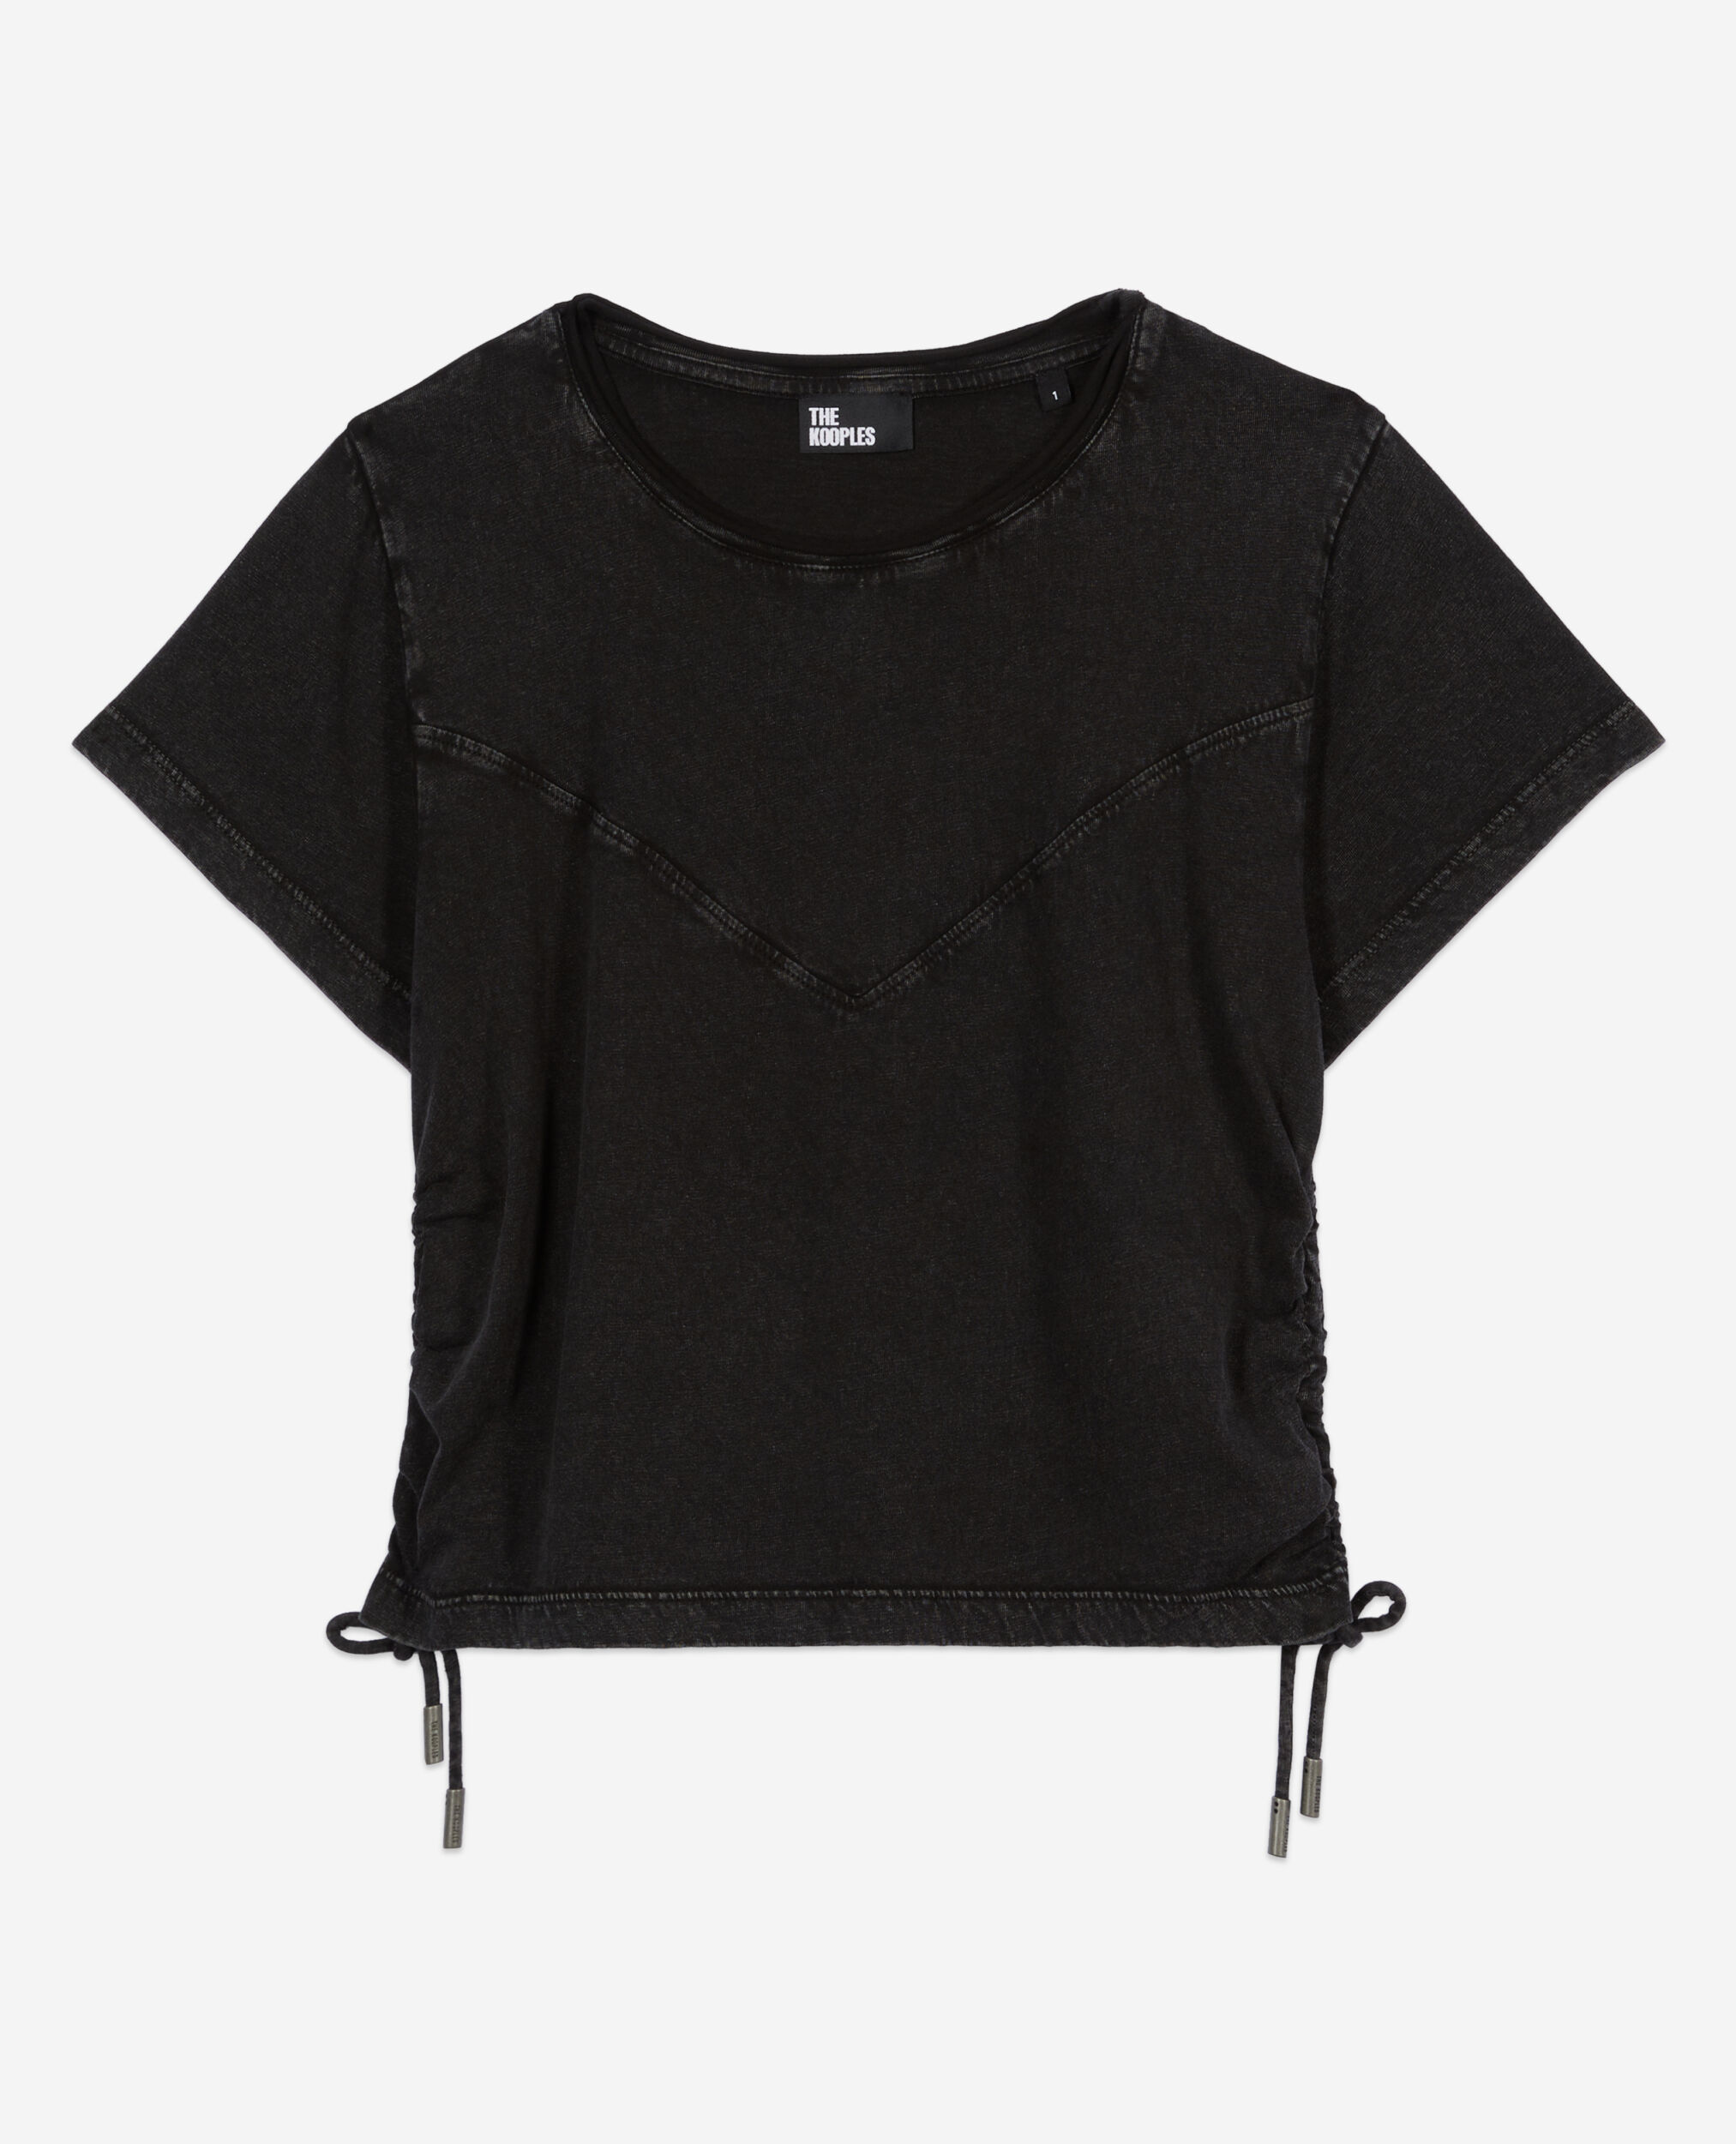 Camiseta negra lazo, BLACK WASHED, hi-res image number null